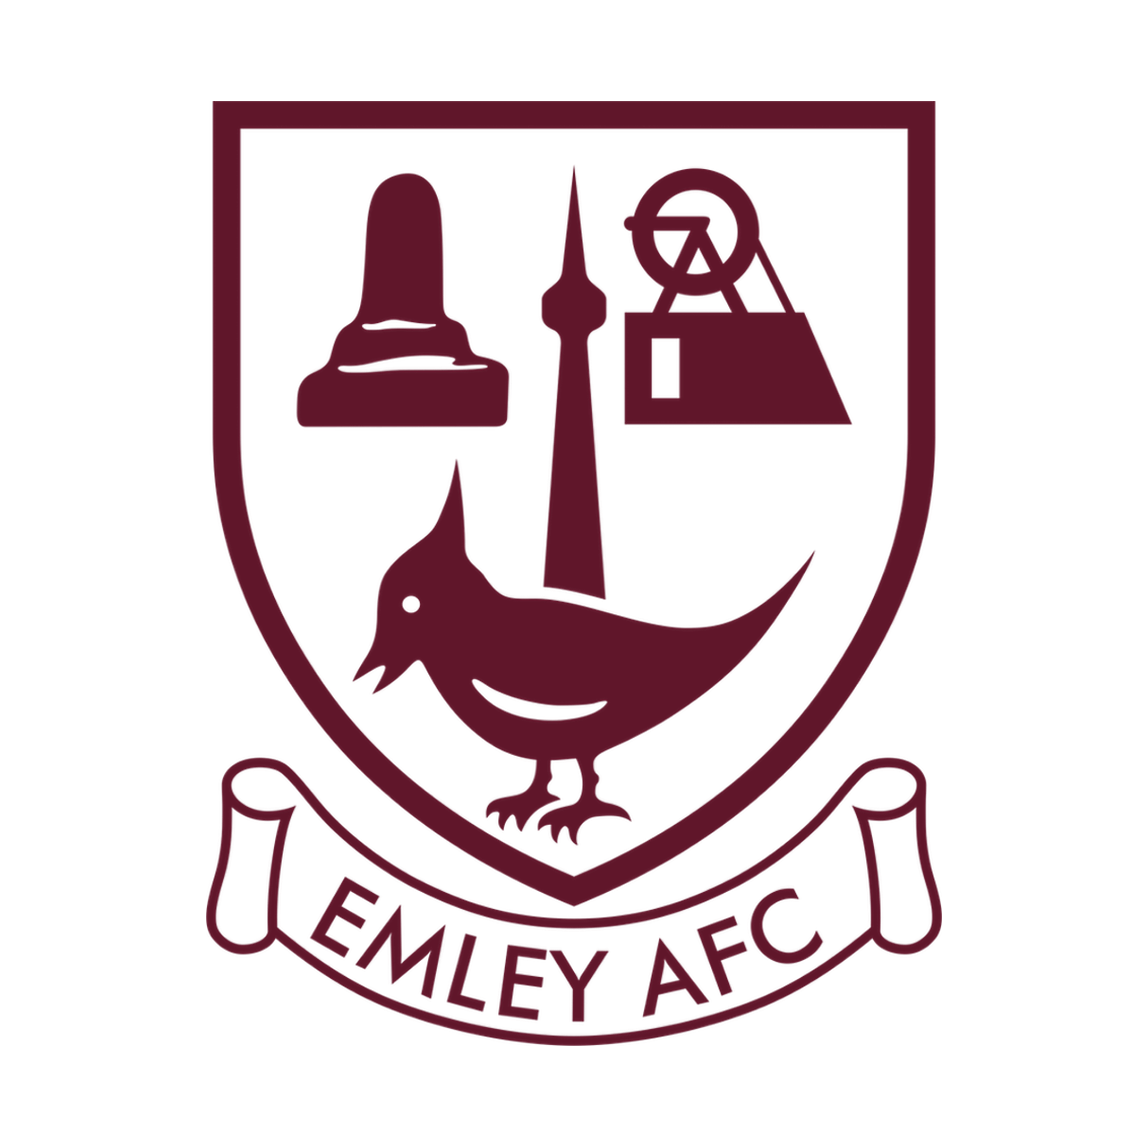 Emley AFC Club Shop